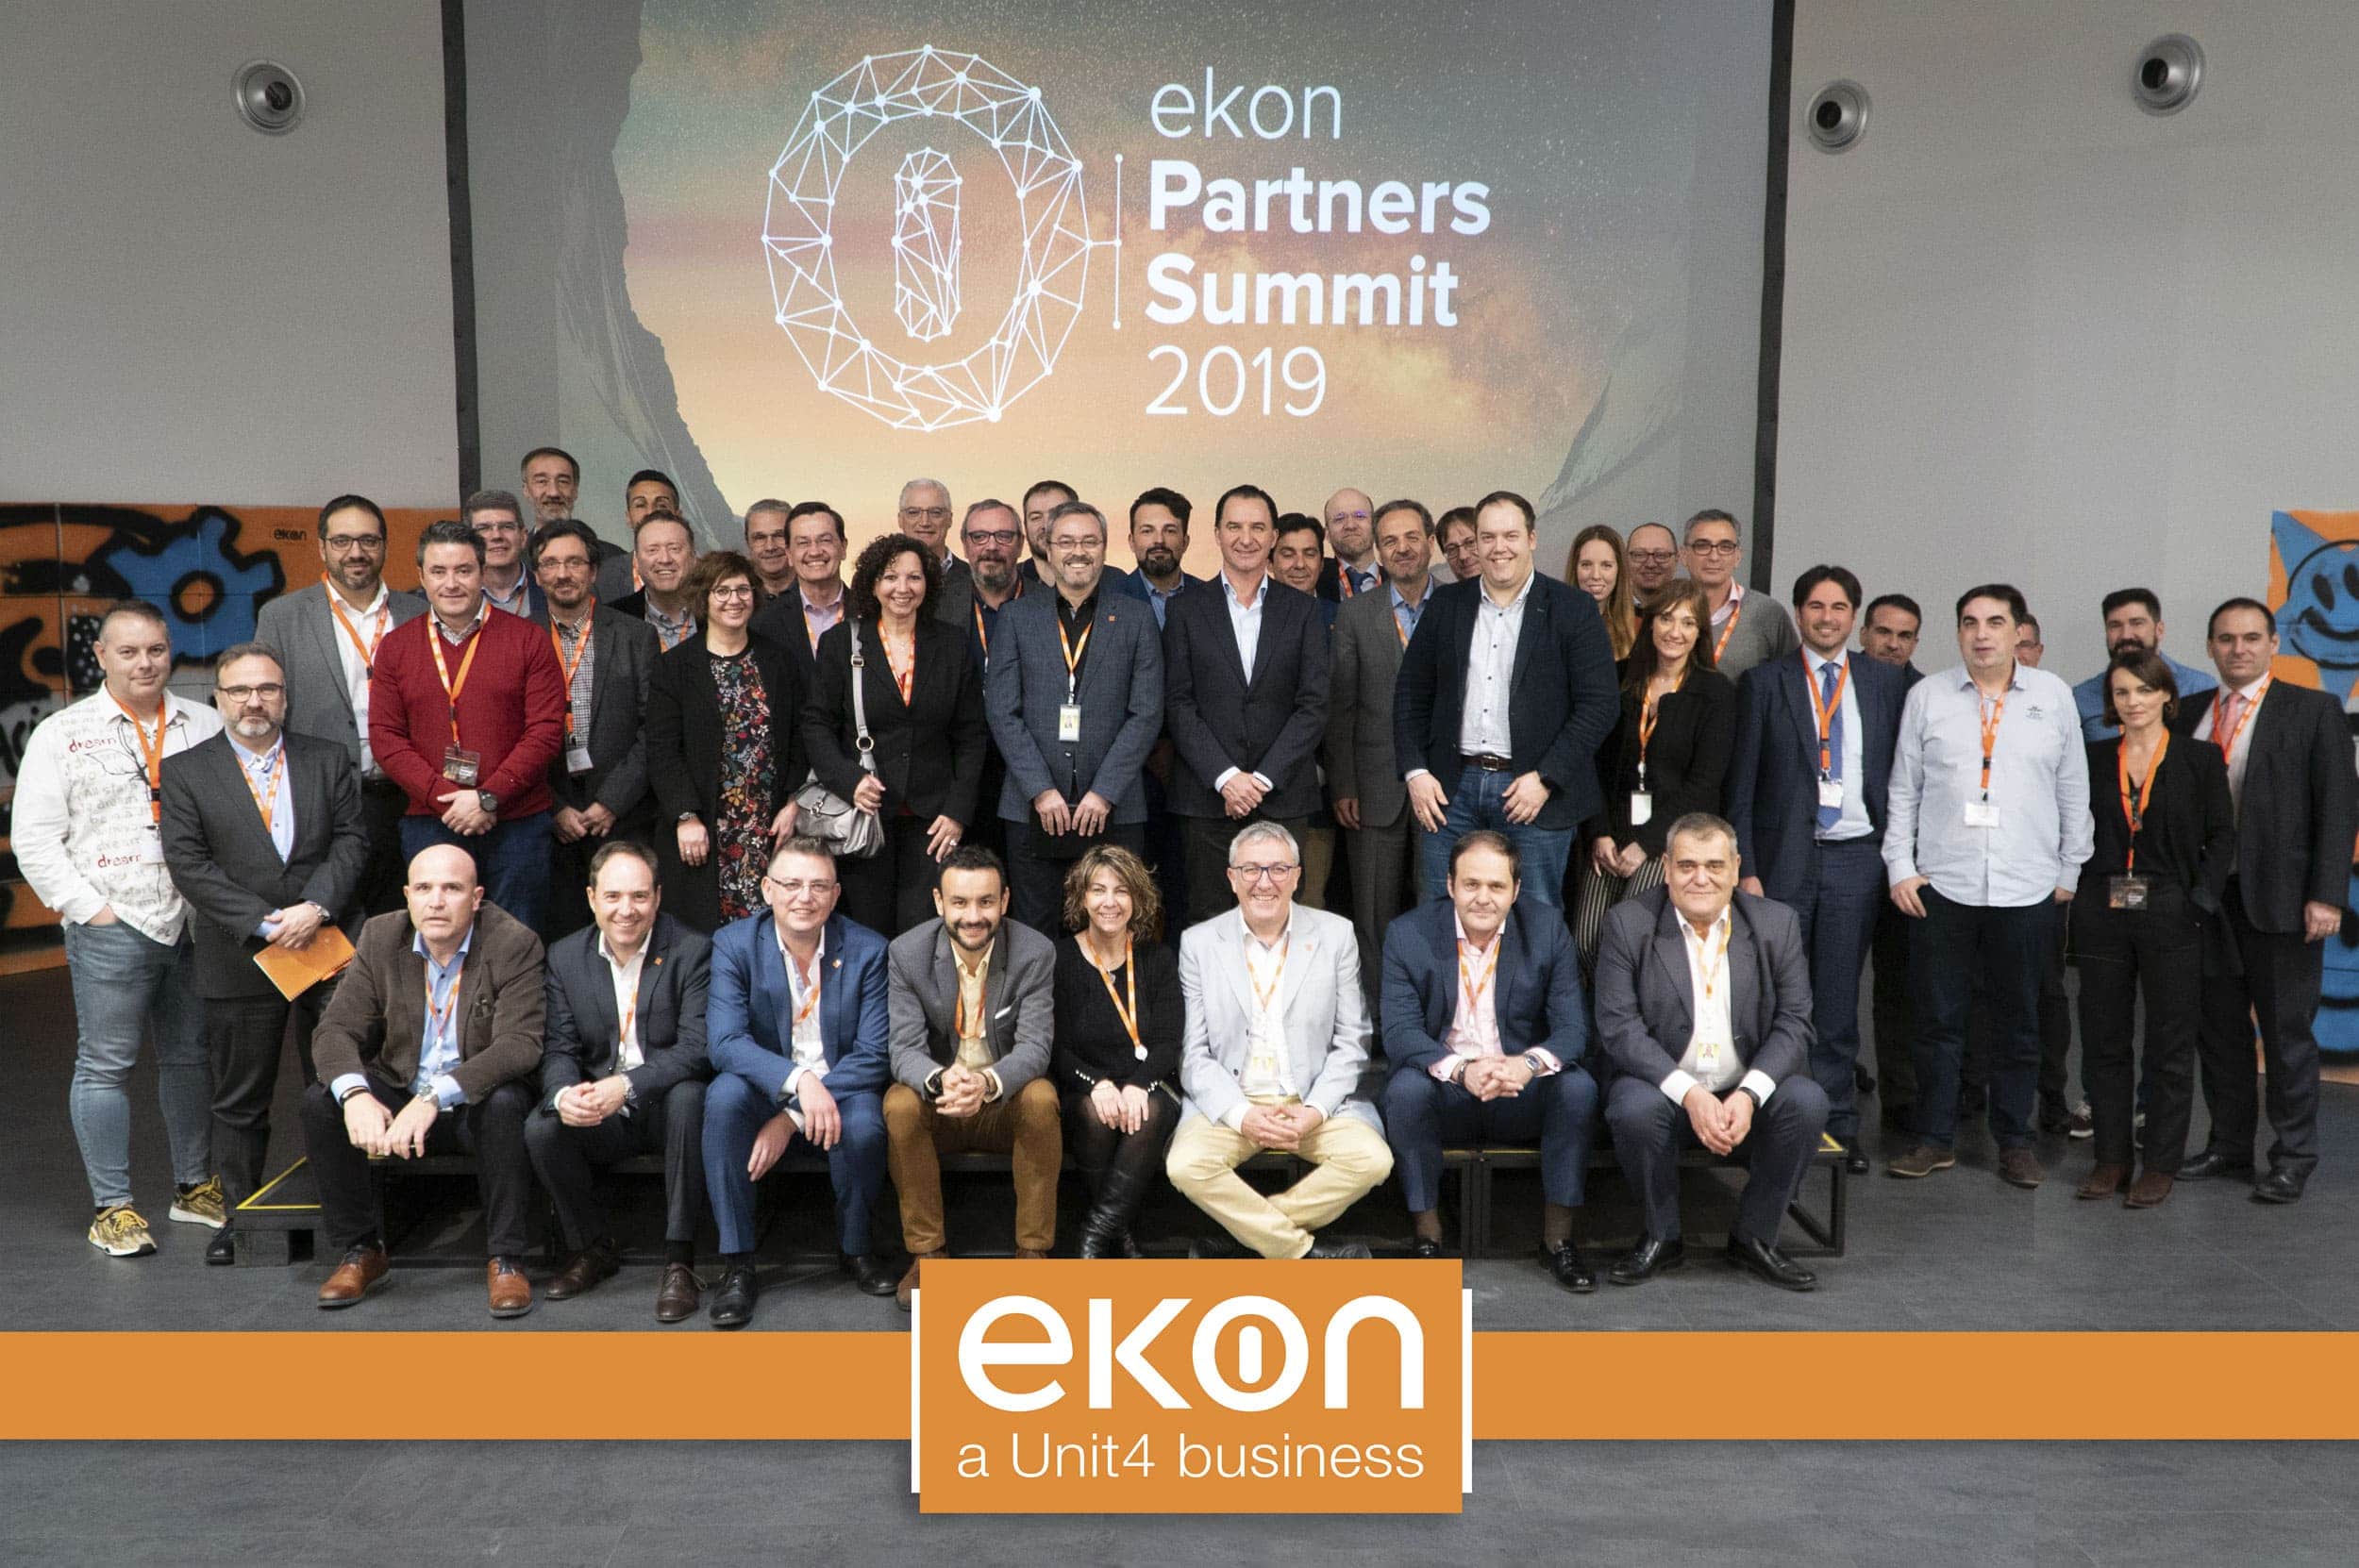 Ekon partners summit